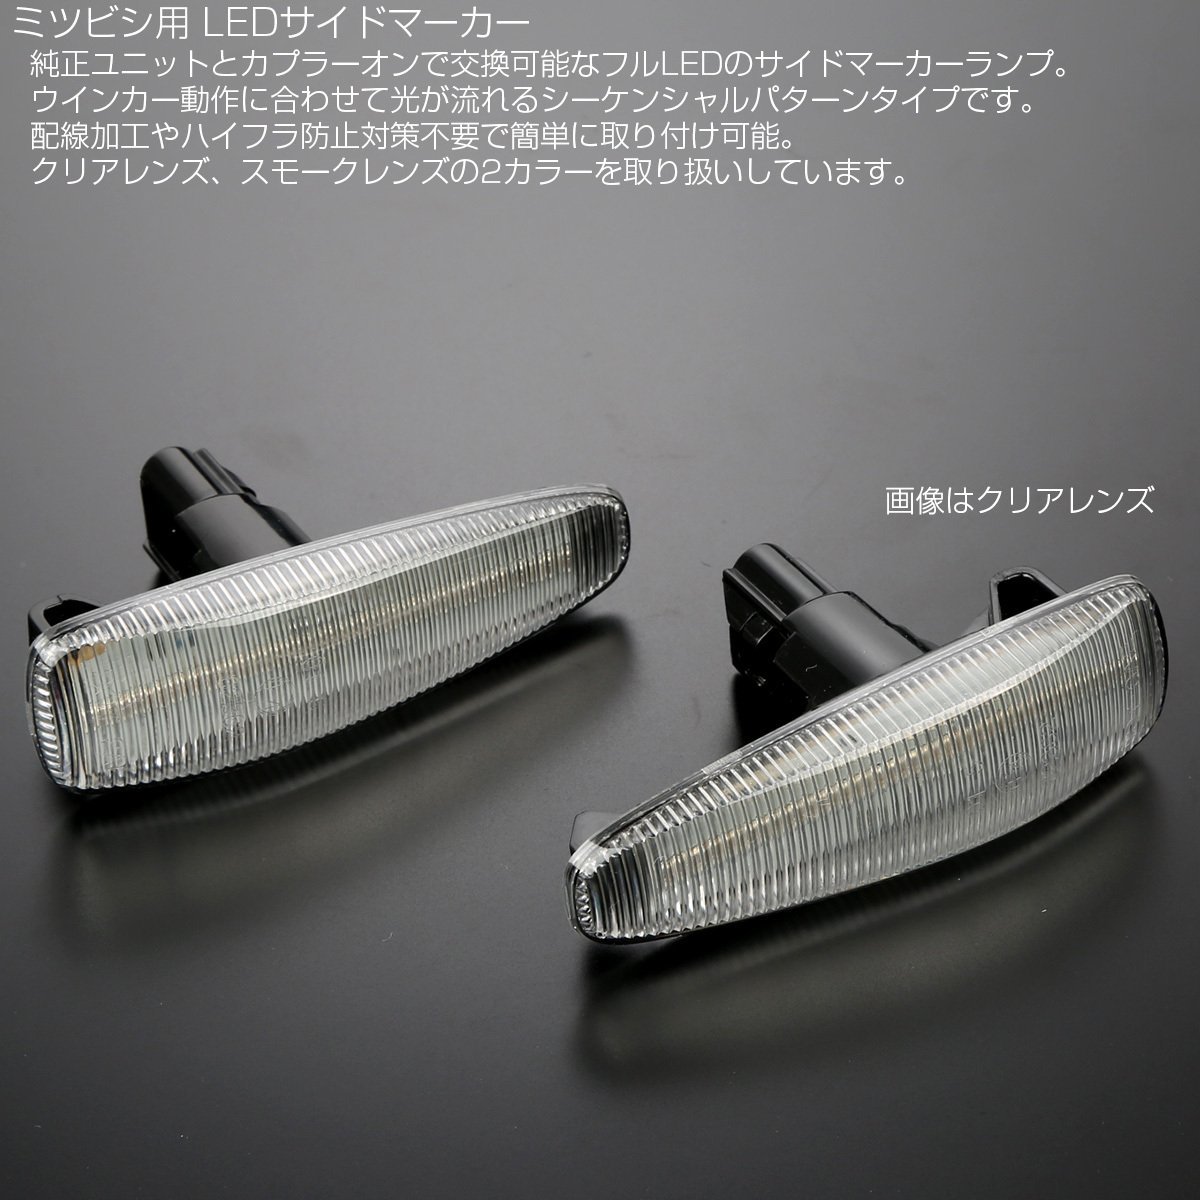 LED サイドマーカー シーケンシャル クリア ミツビシ CZ4A ランサーエボリューションⅩ CY ギャランフォルティス CX スポーツバック F-545_画像2